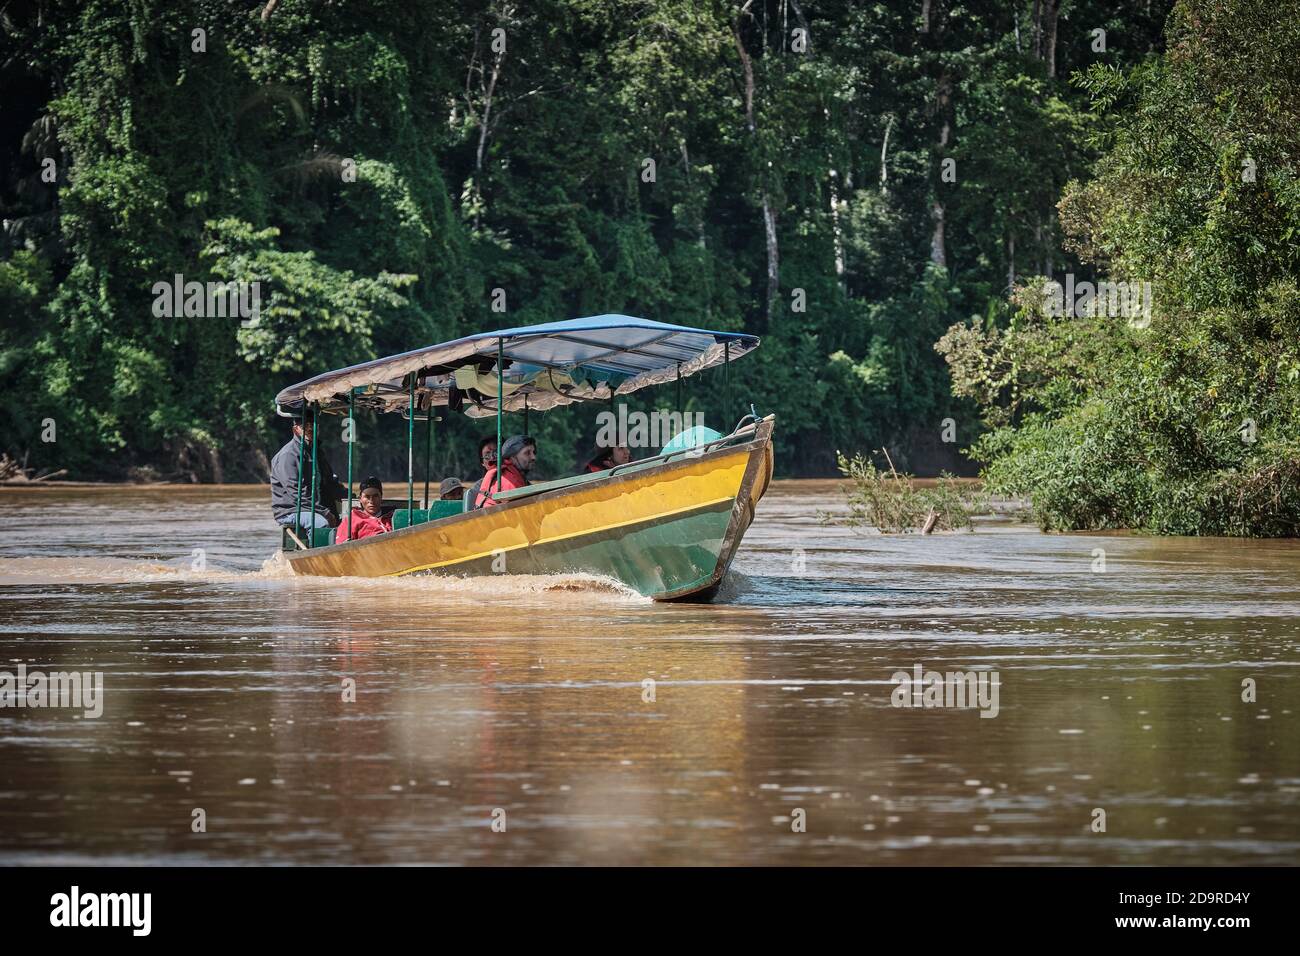 A tourist boat in Amazonia, Peru (Madre de Dios Region, Manu National Park) Stock Photo